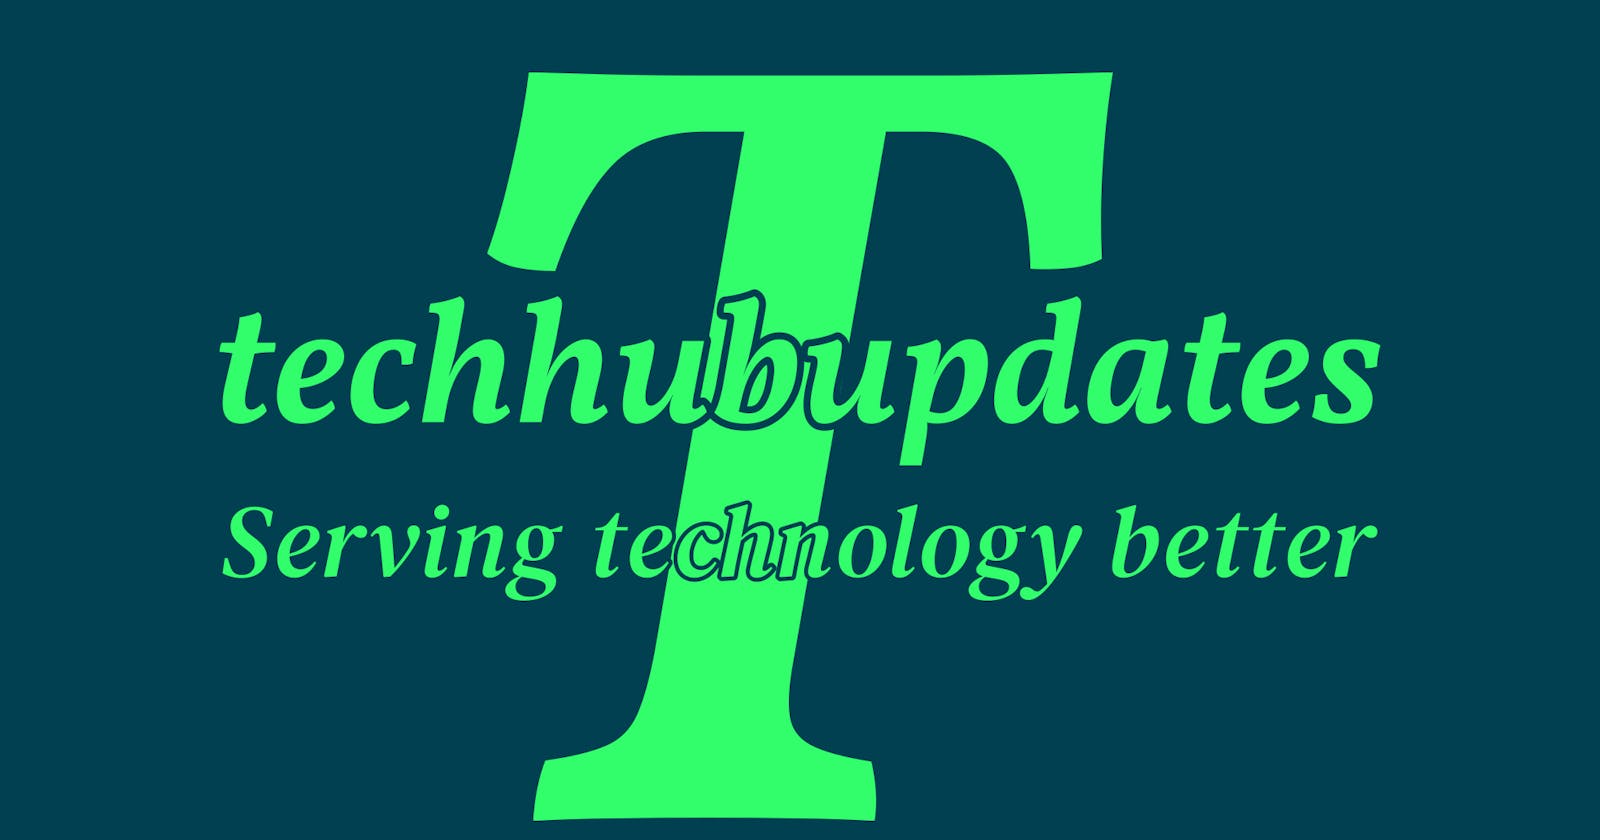 Techhubupdates